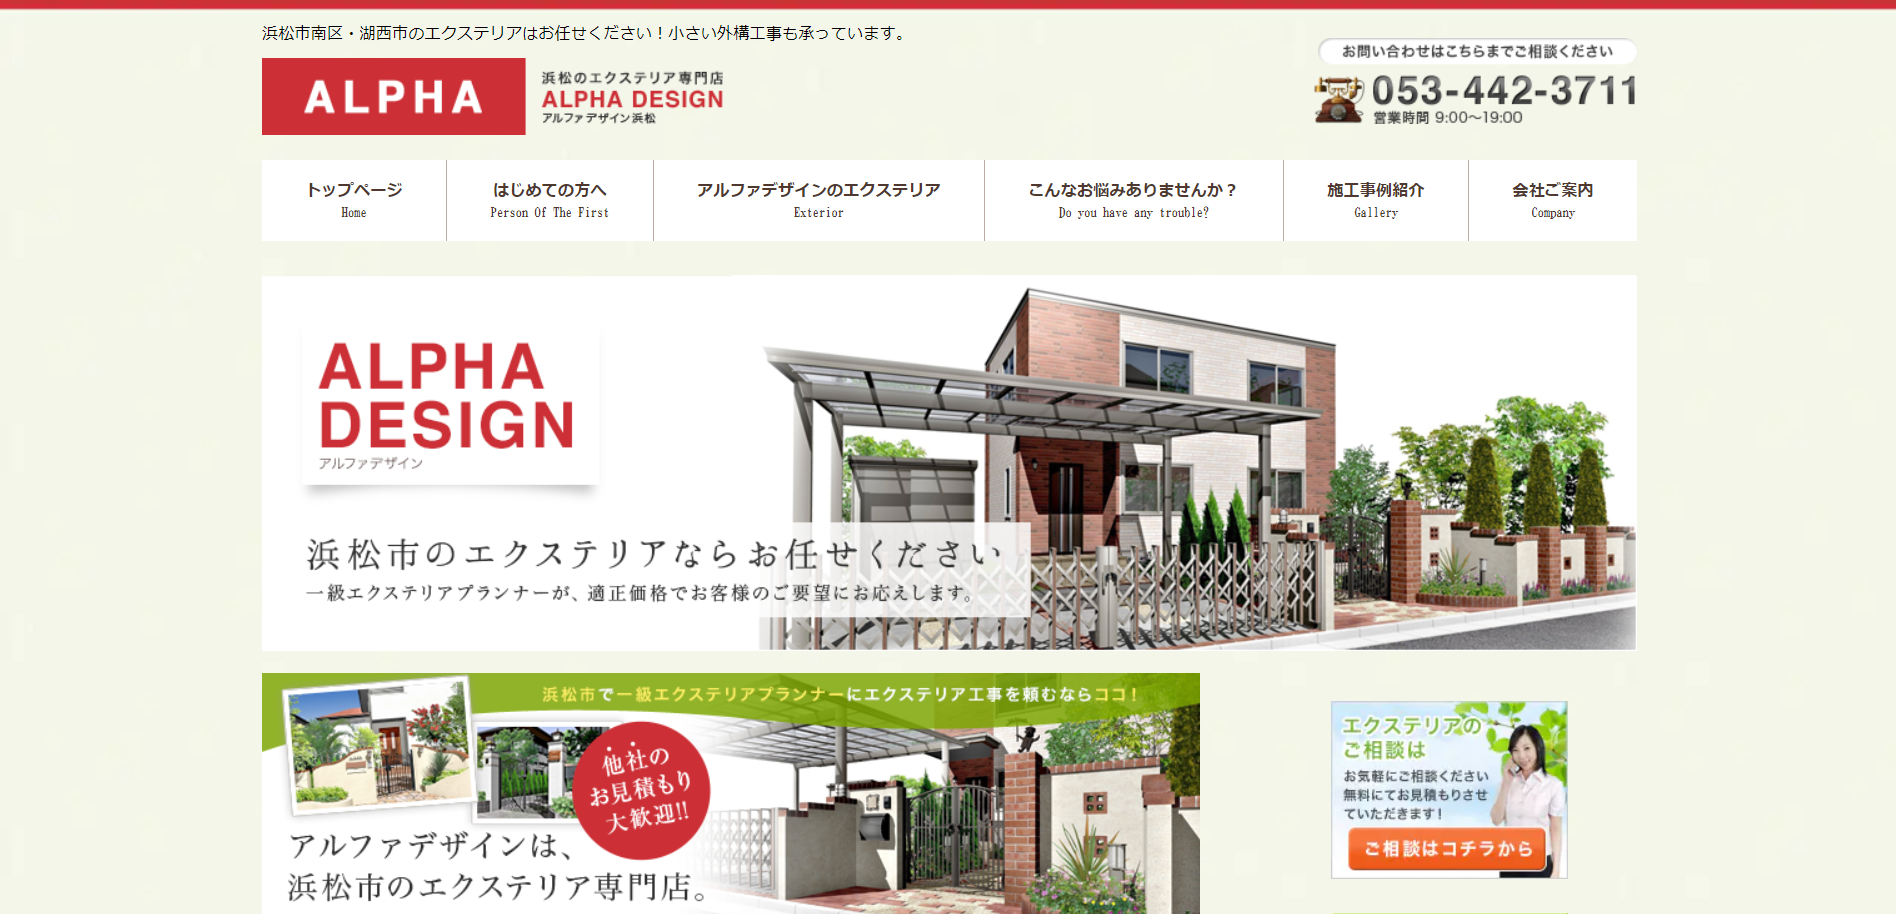 浜松市で評判のおすすめ外構業者ランキング 第10位 アルファデザイン浜松